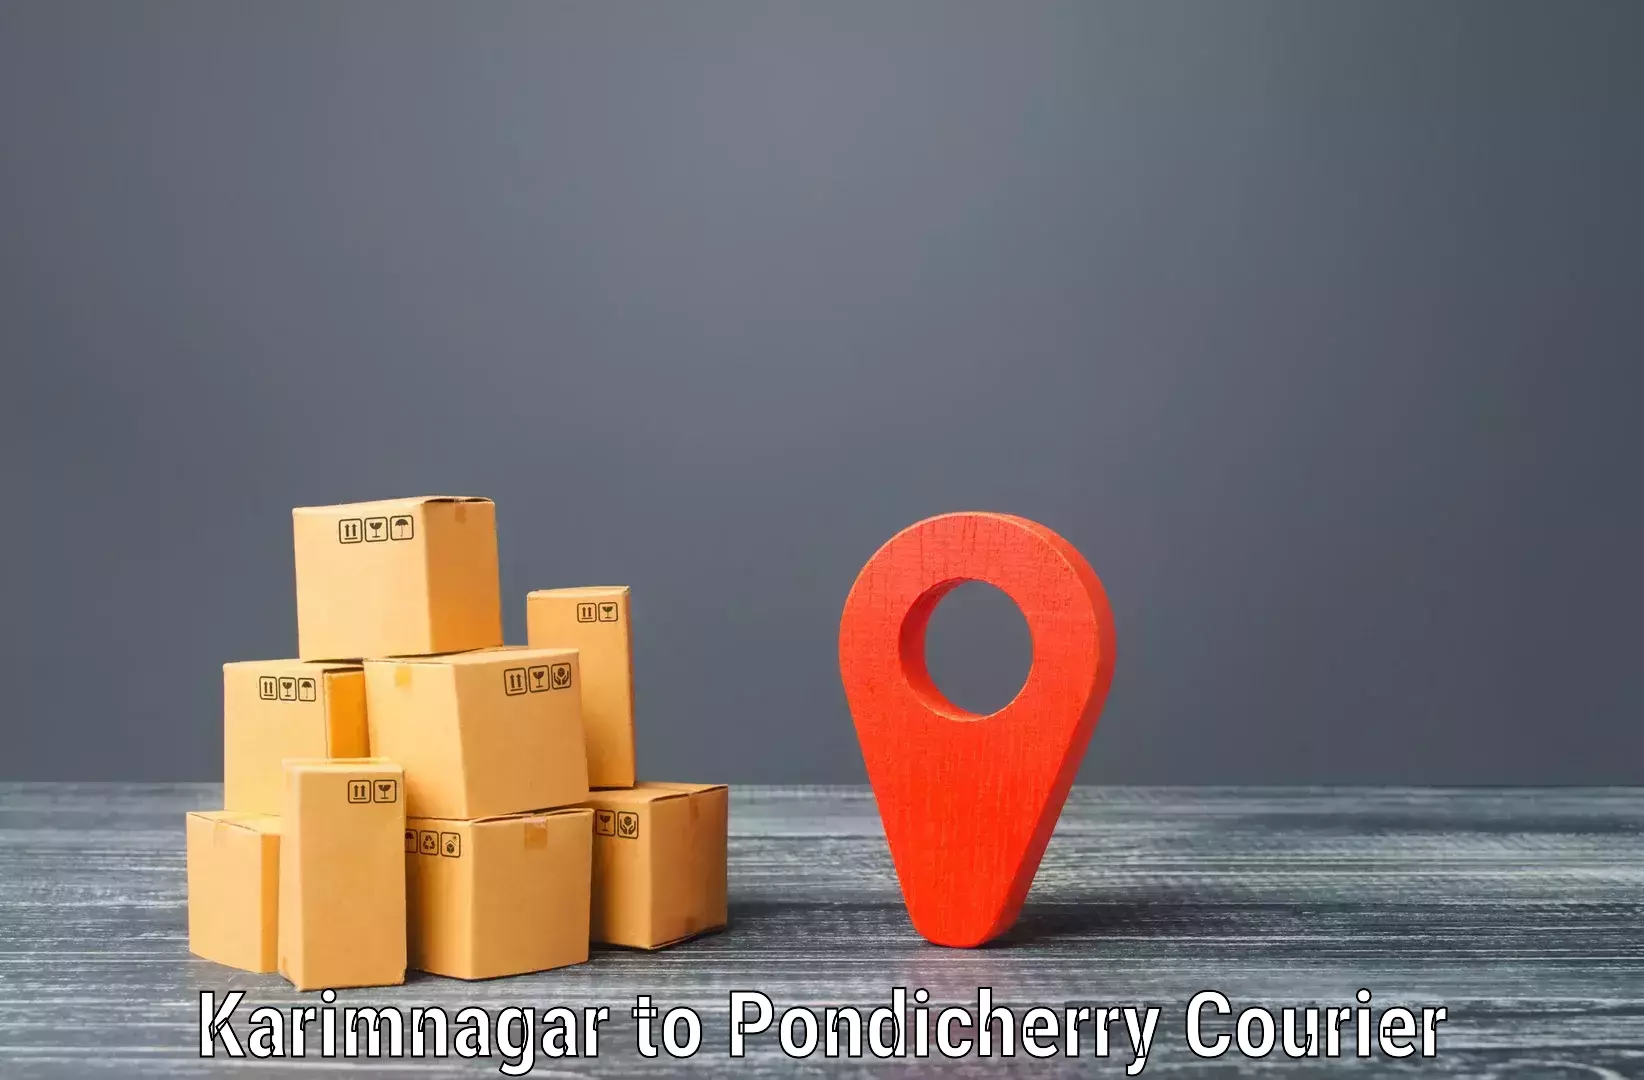 Efficient shipping platforms Karimnagar to Pondicherry